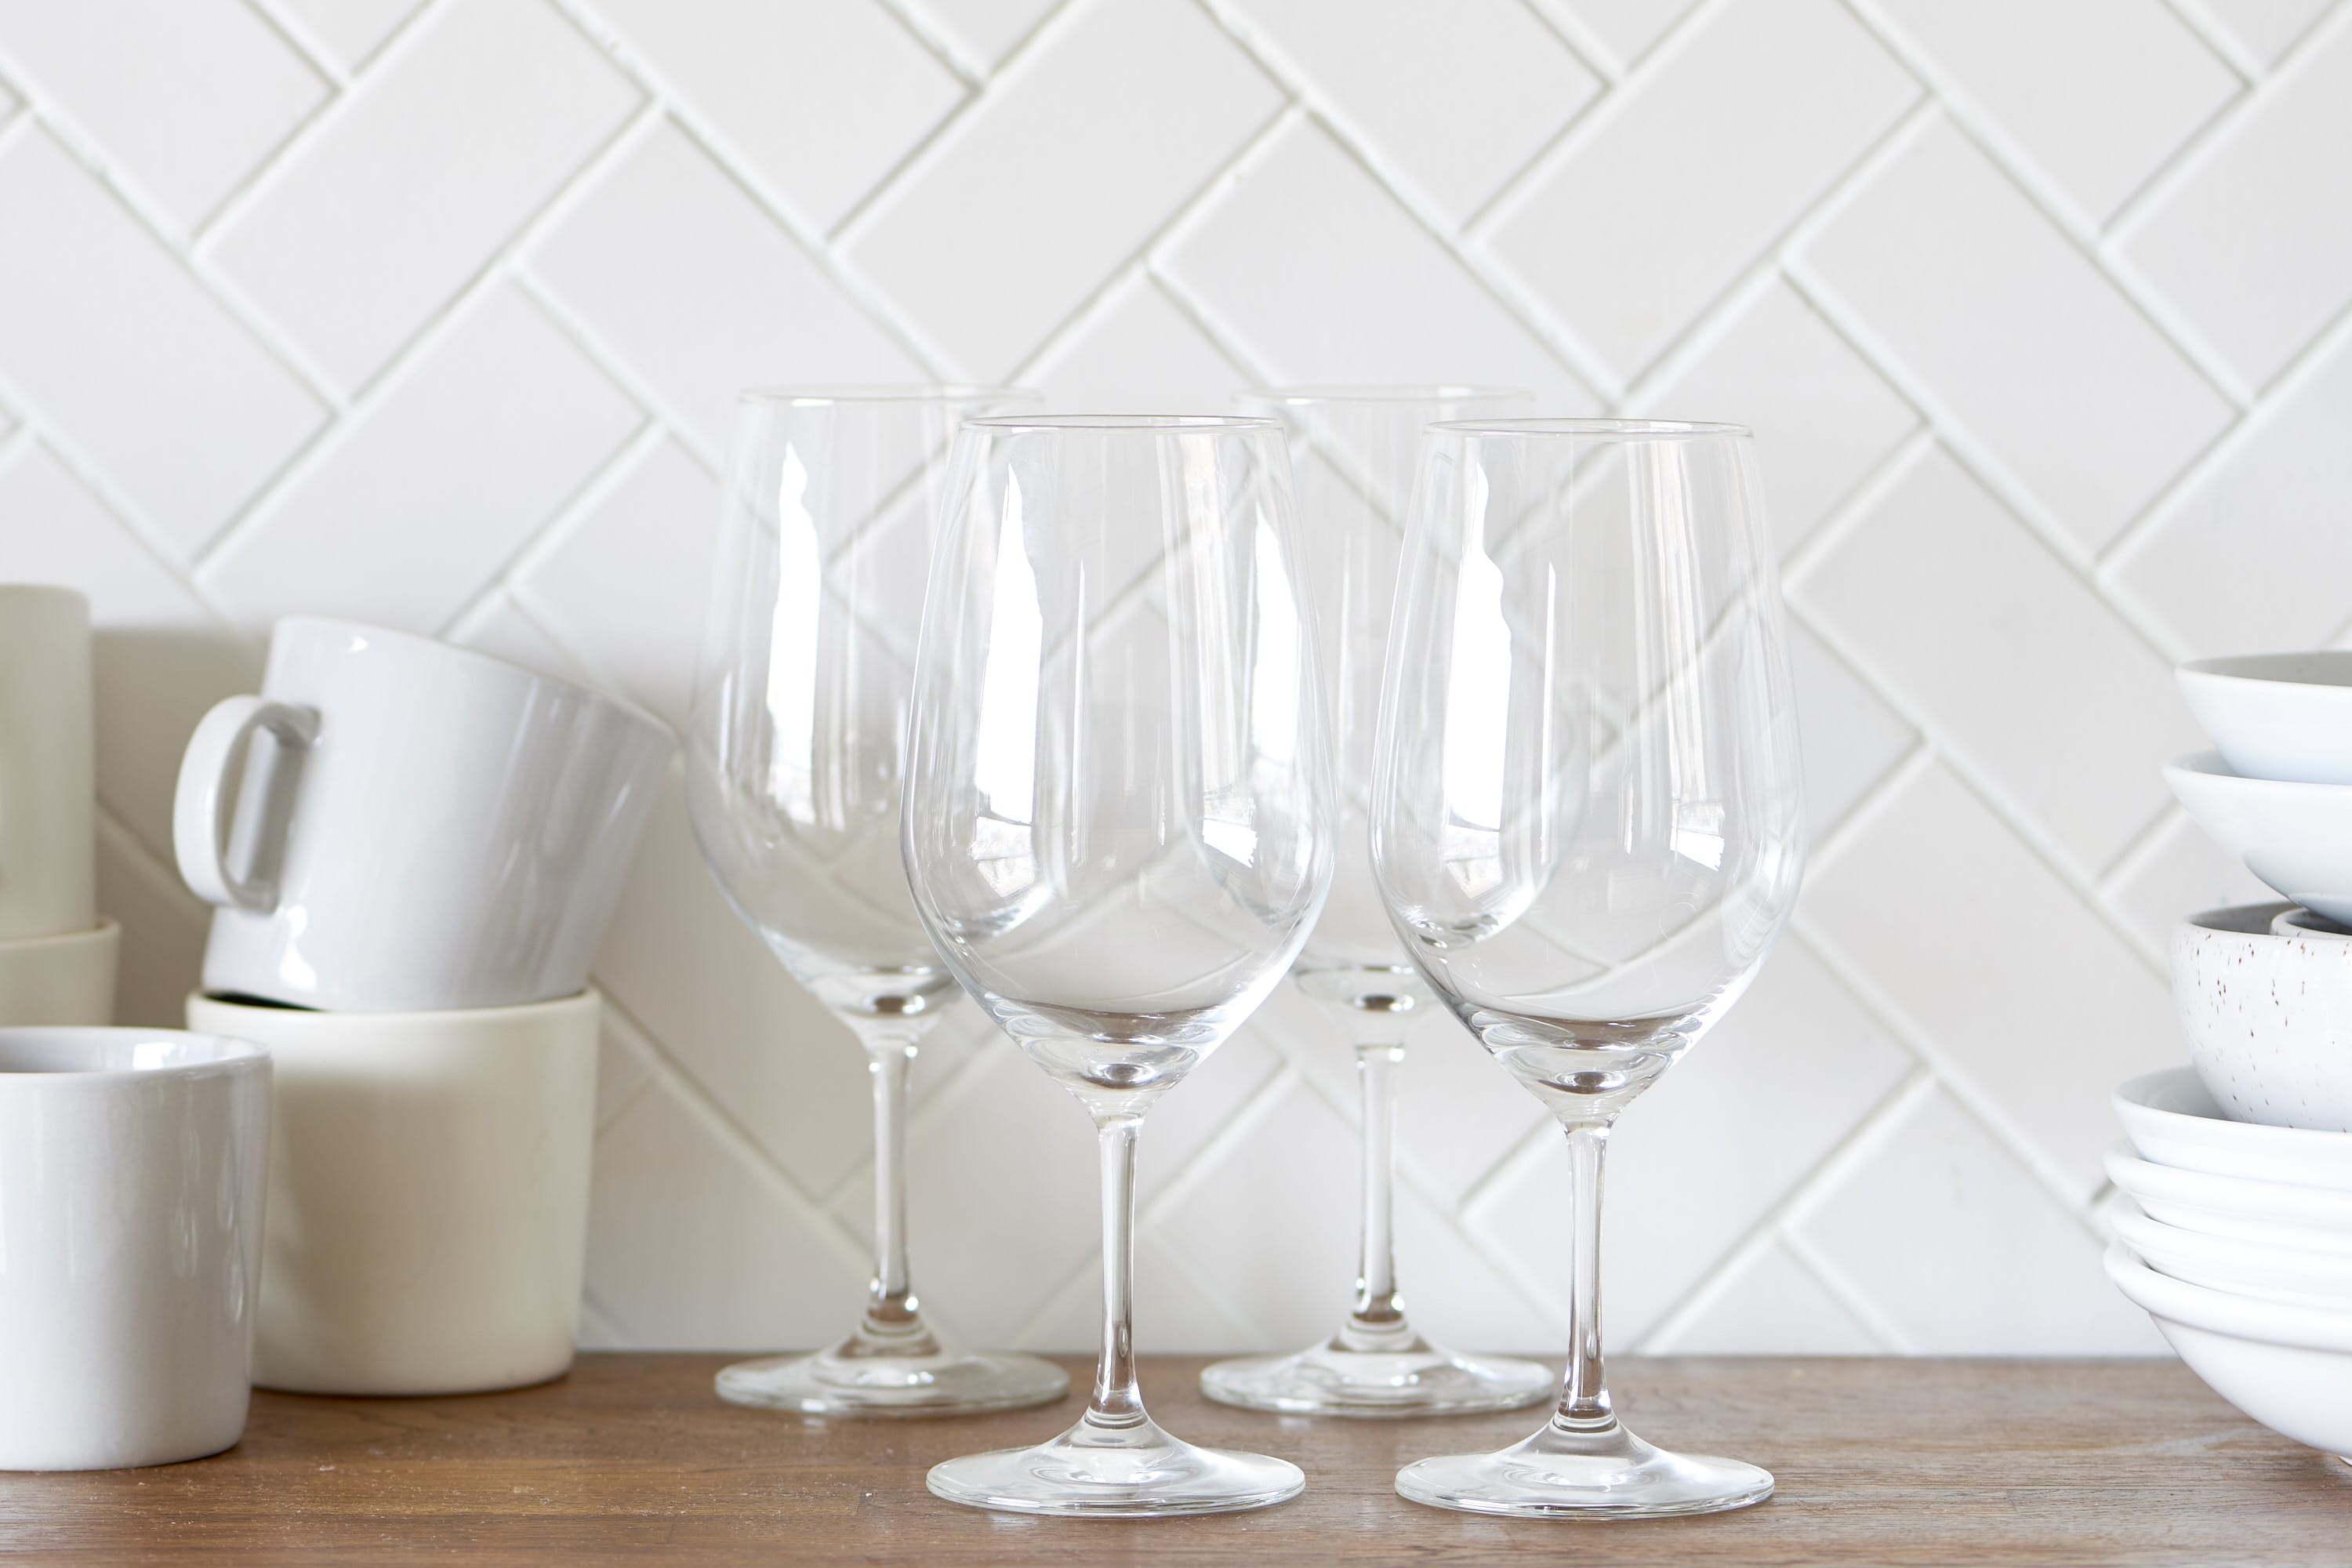 Kohler Wine Glass Drying Rack Review